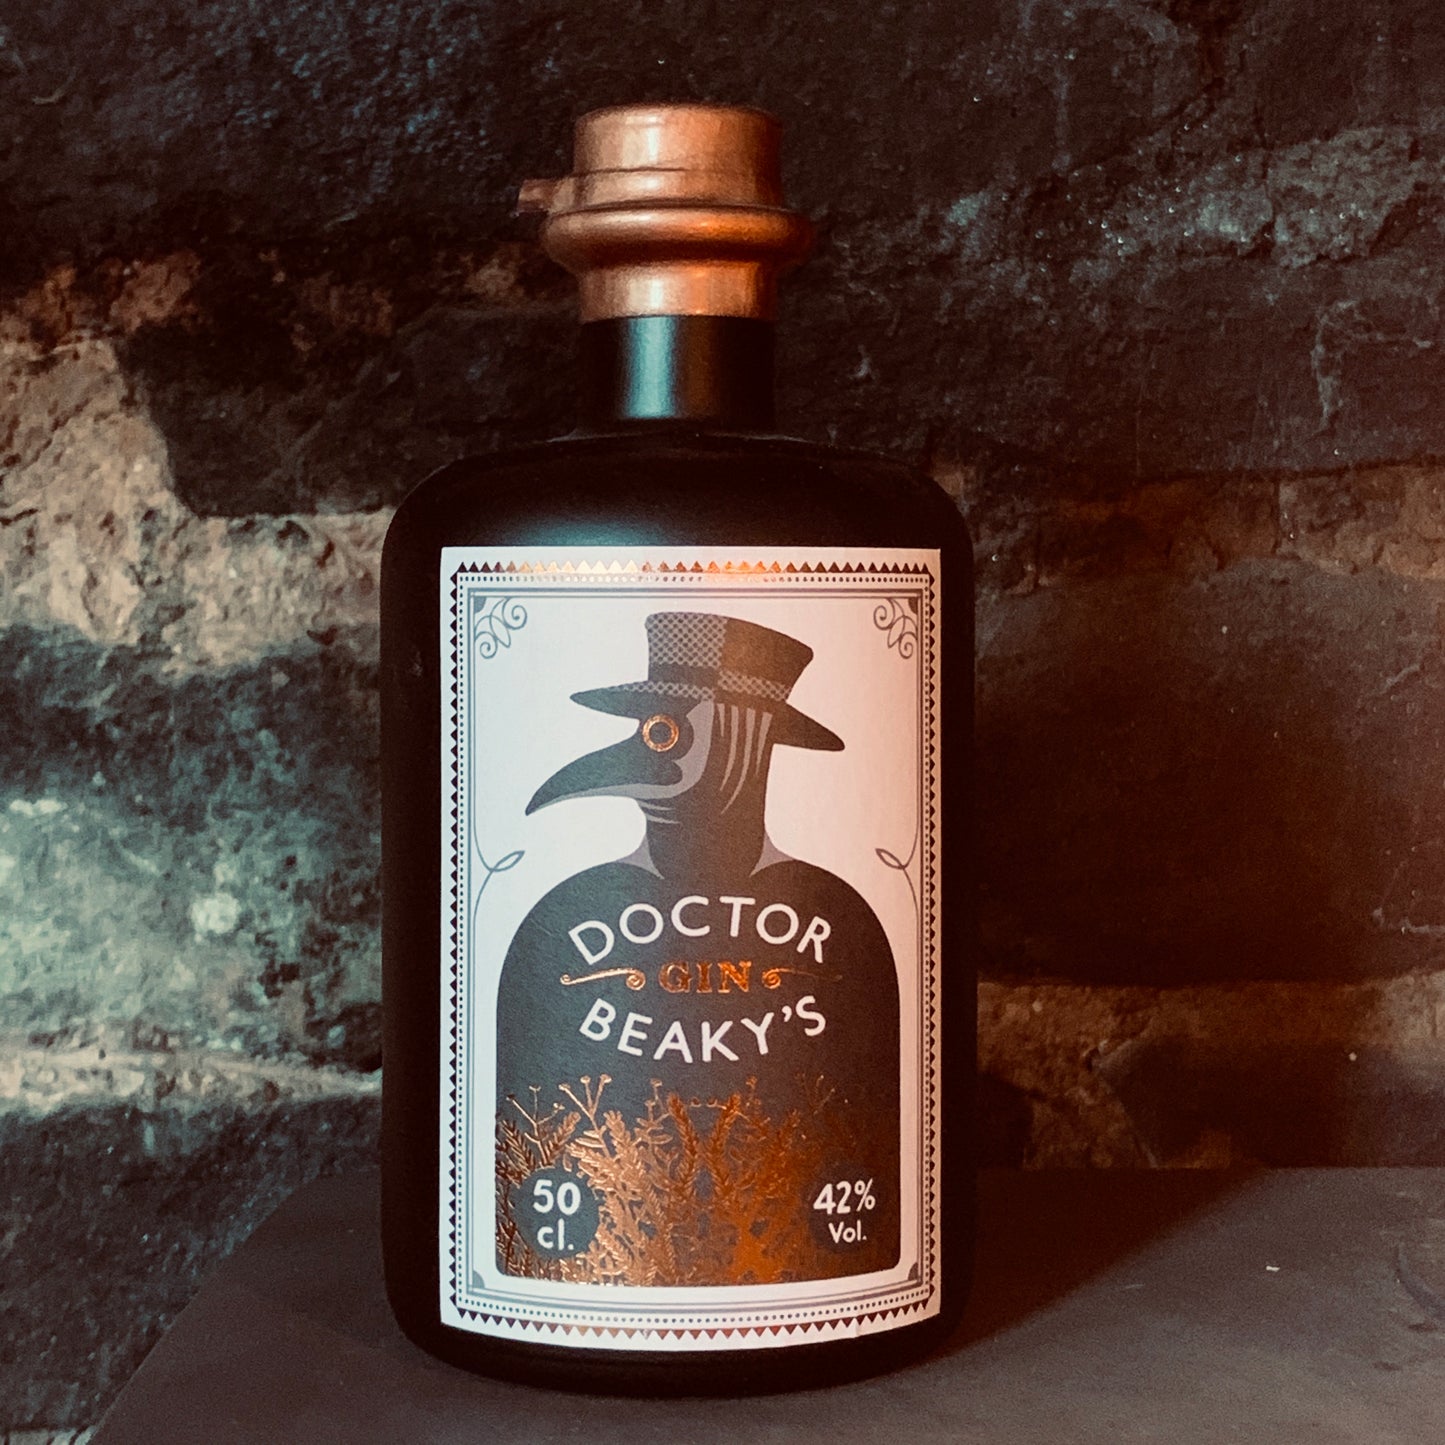 Dr Beaky’s Gin